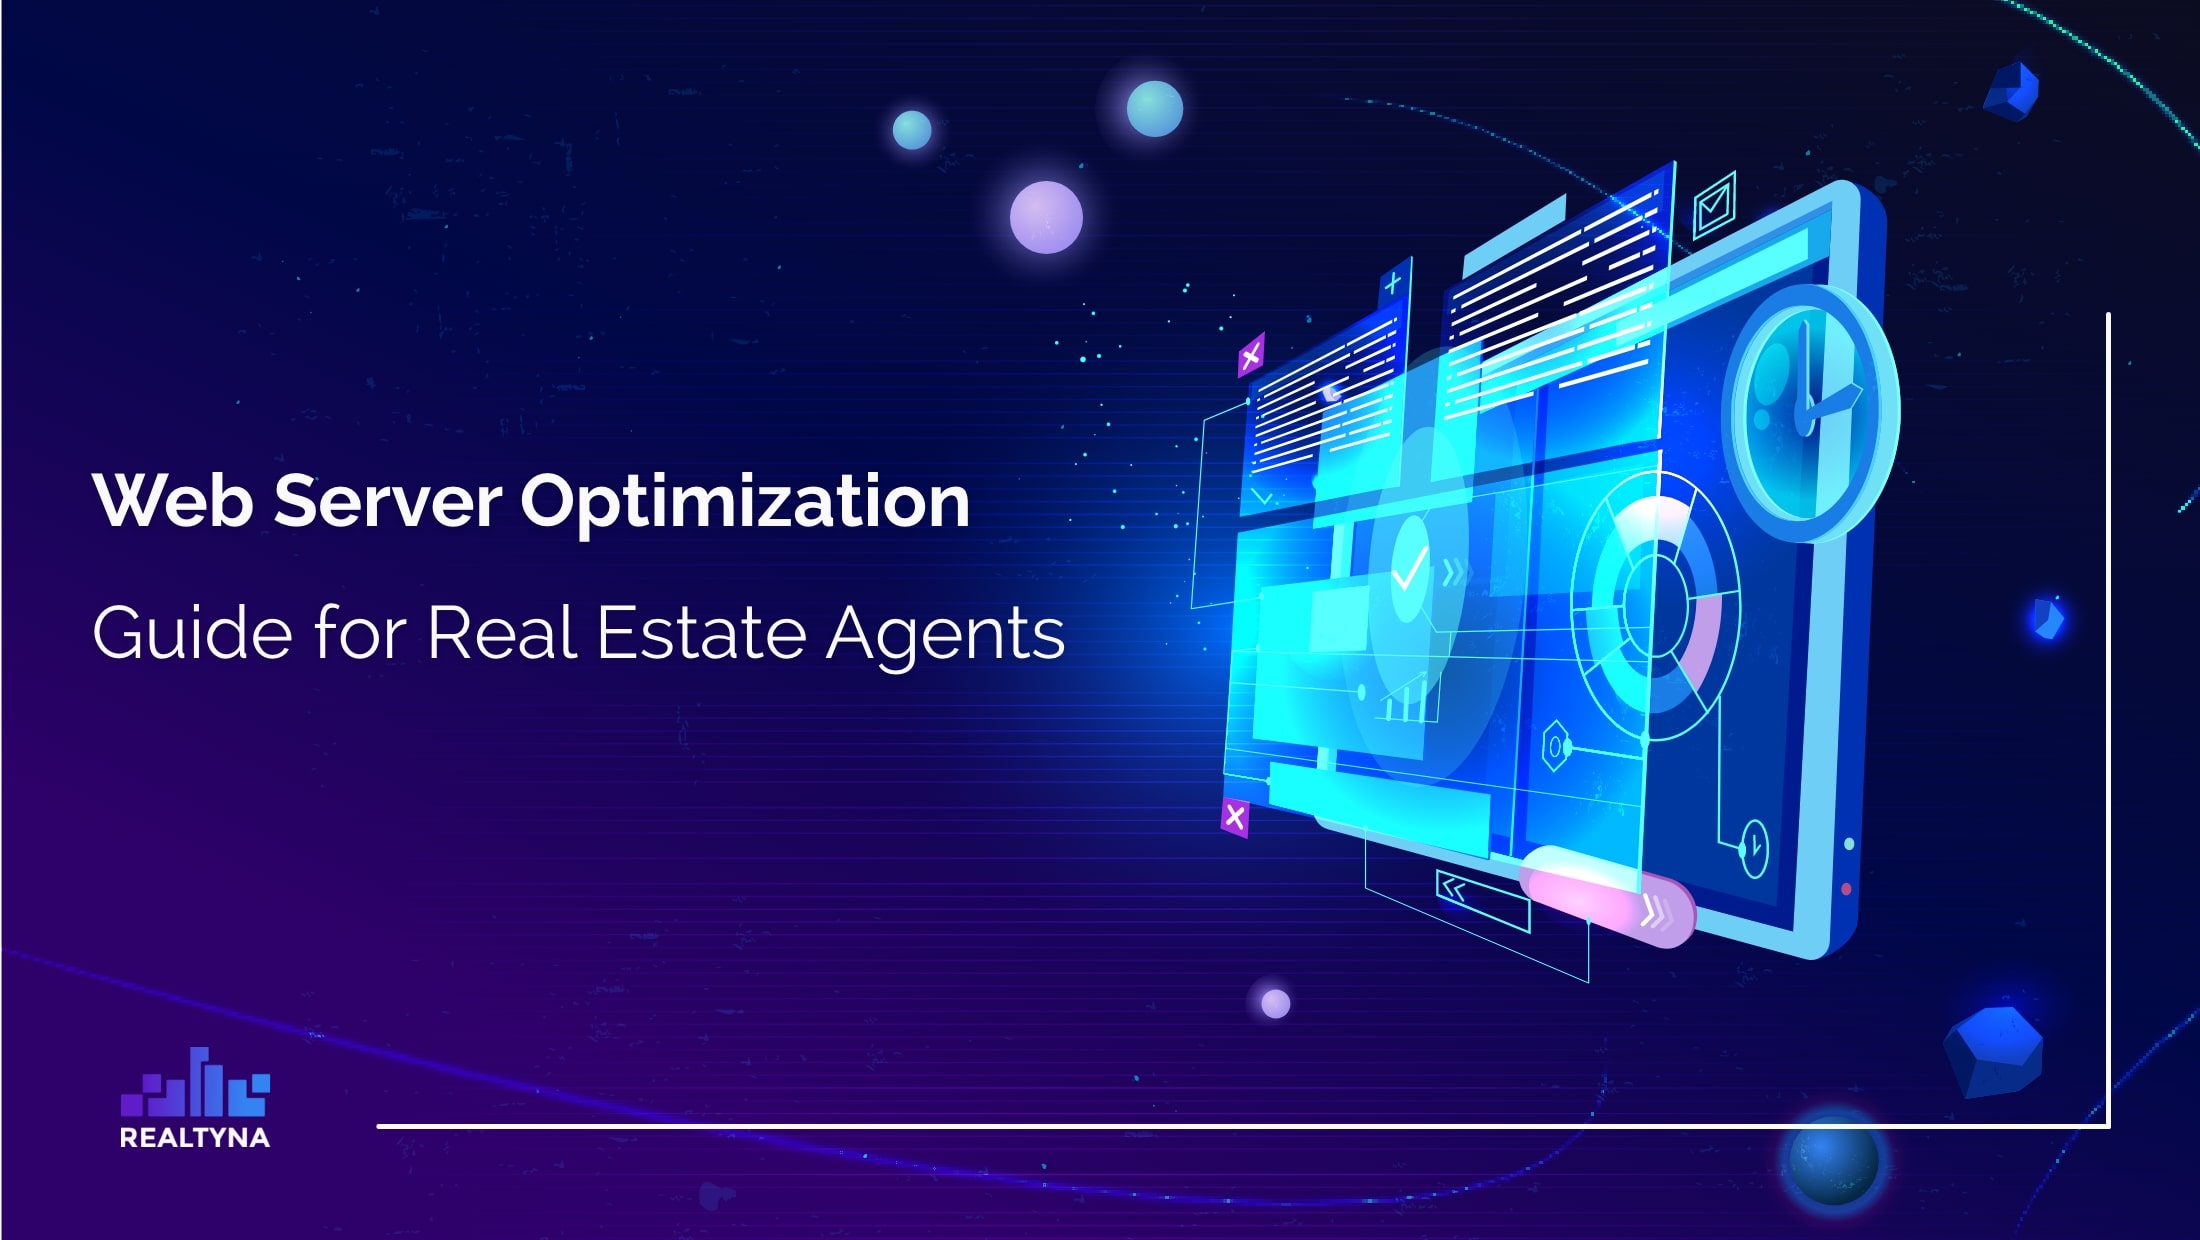 real estate website optimization